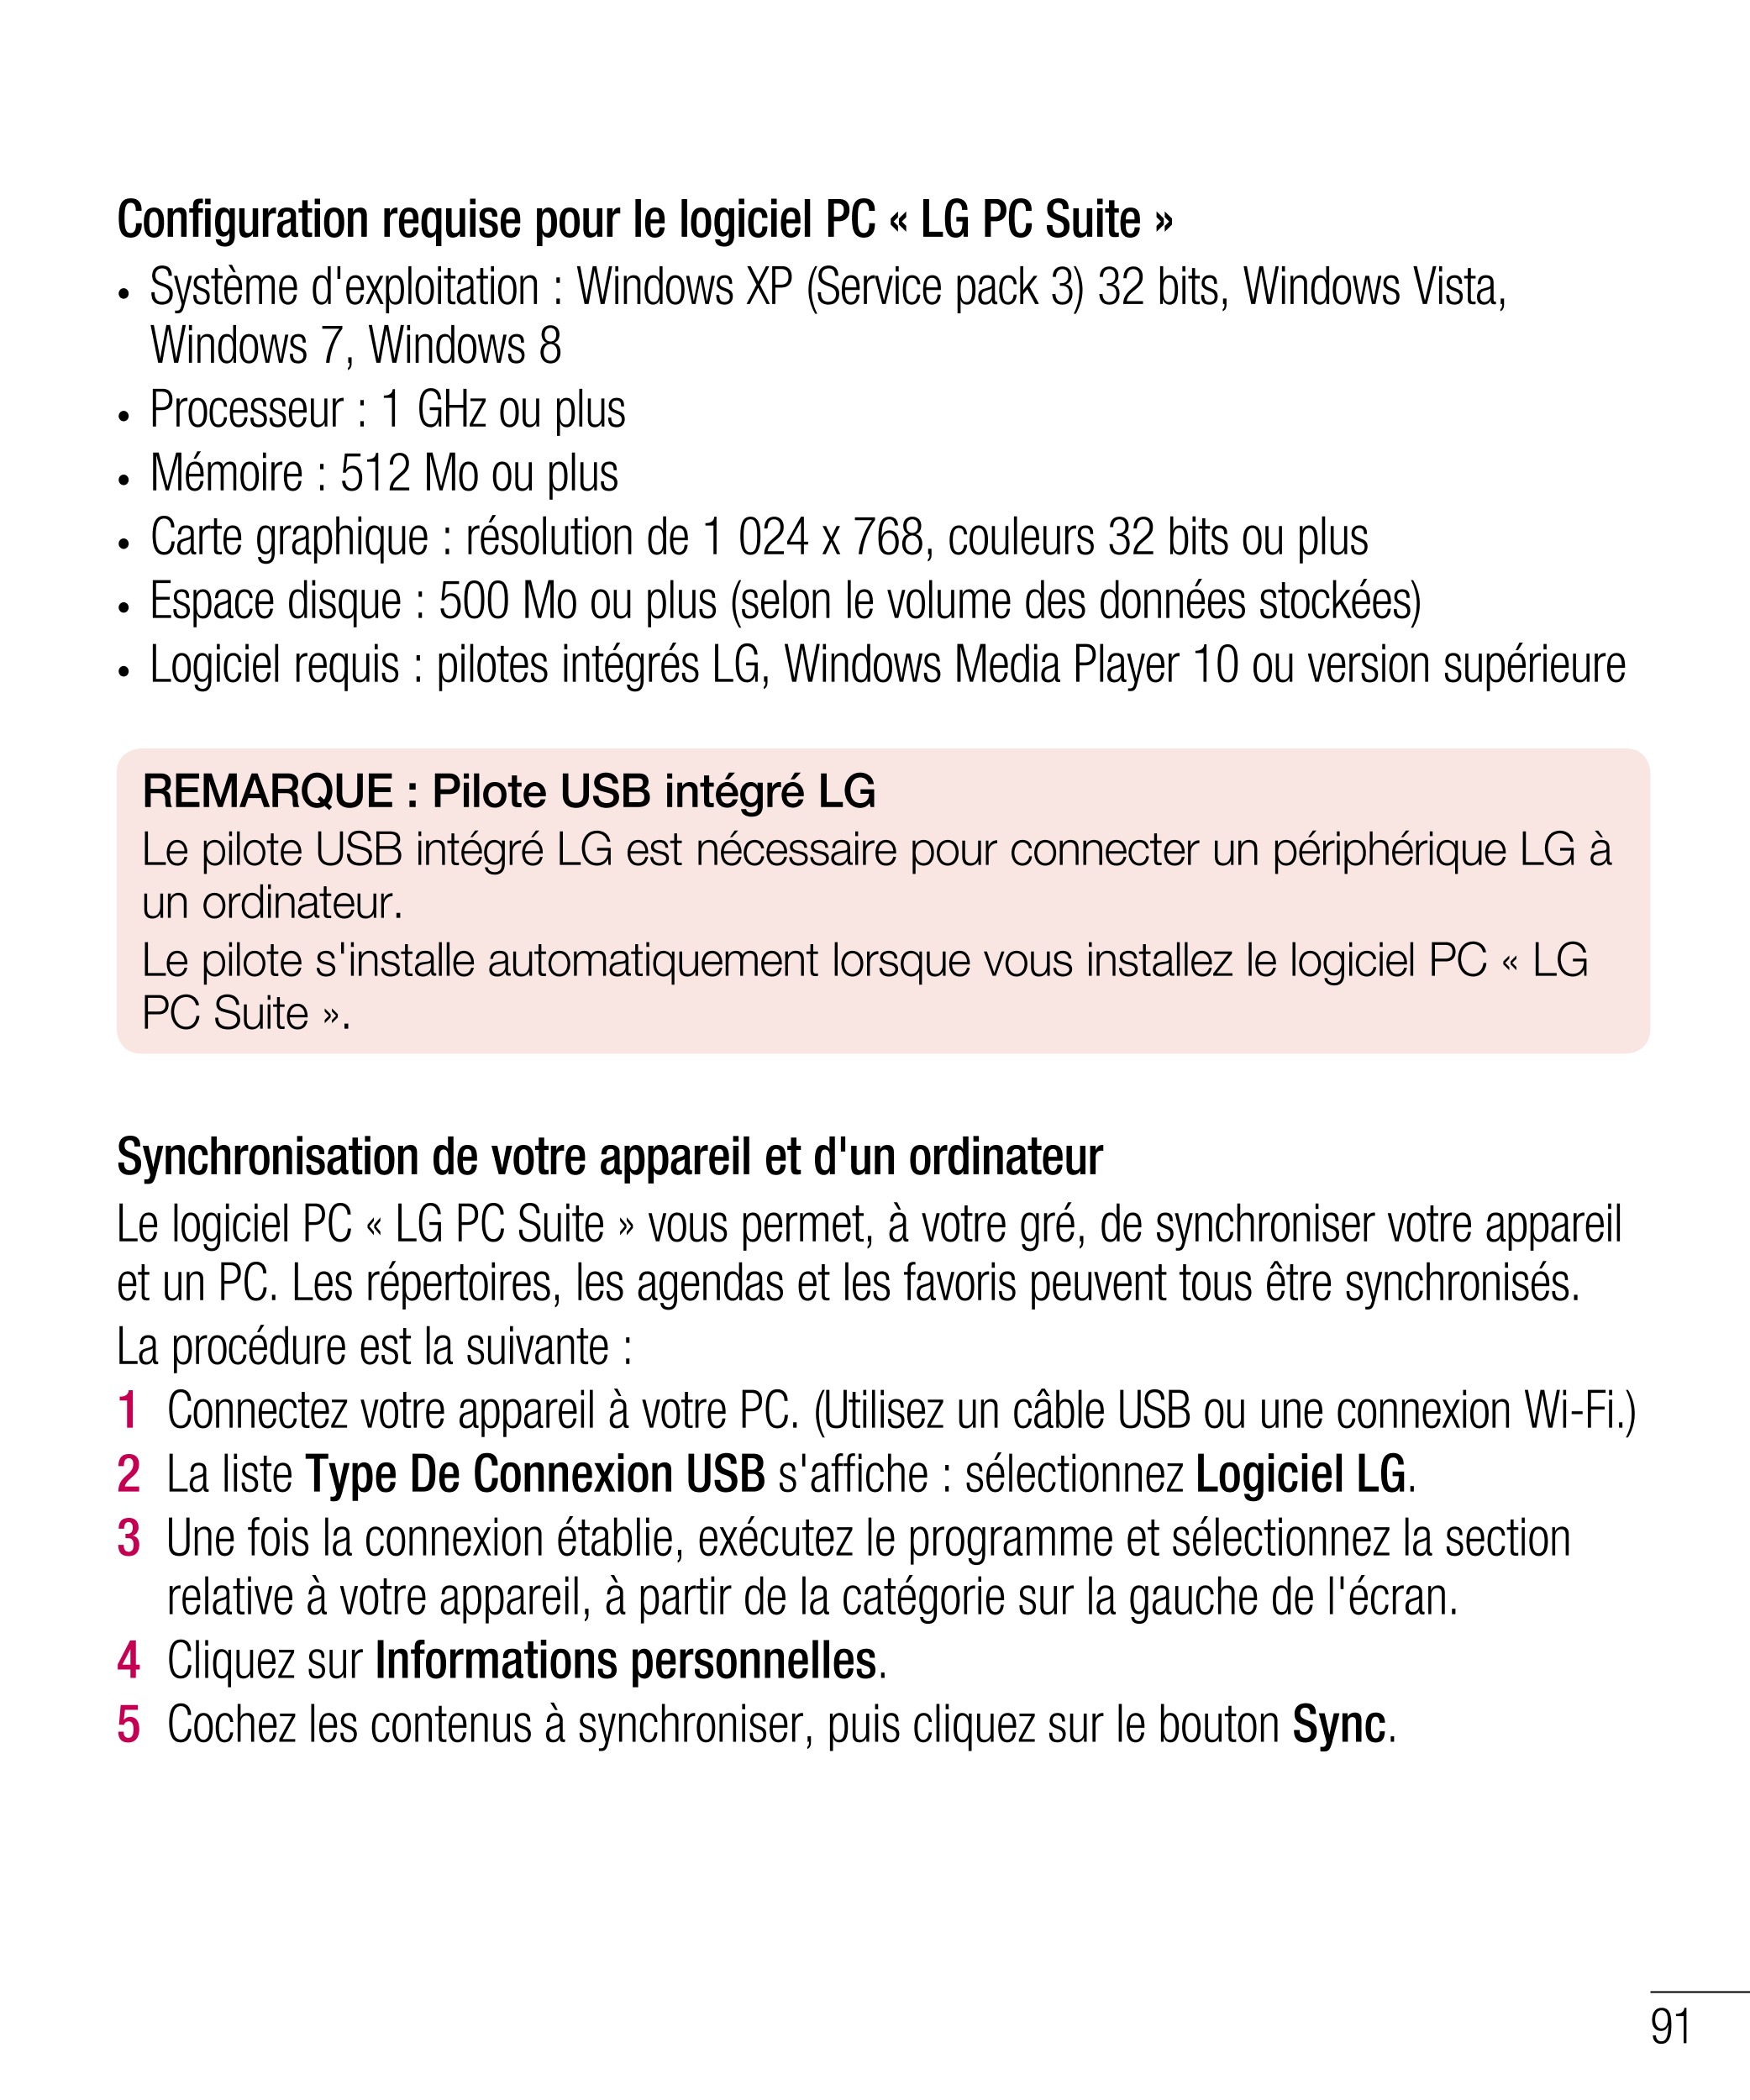 Configuration requise pour le logiciel PC « LG PC Suite »
•  Système d'exploitation : Windows XP (Service pack 3) 32 bits, Windo